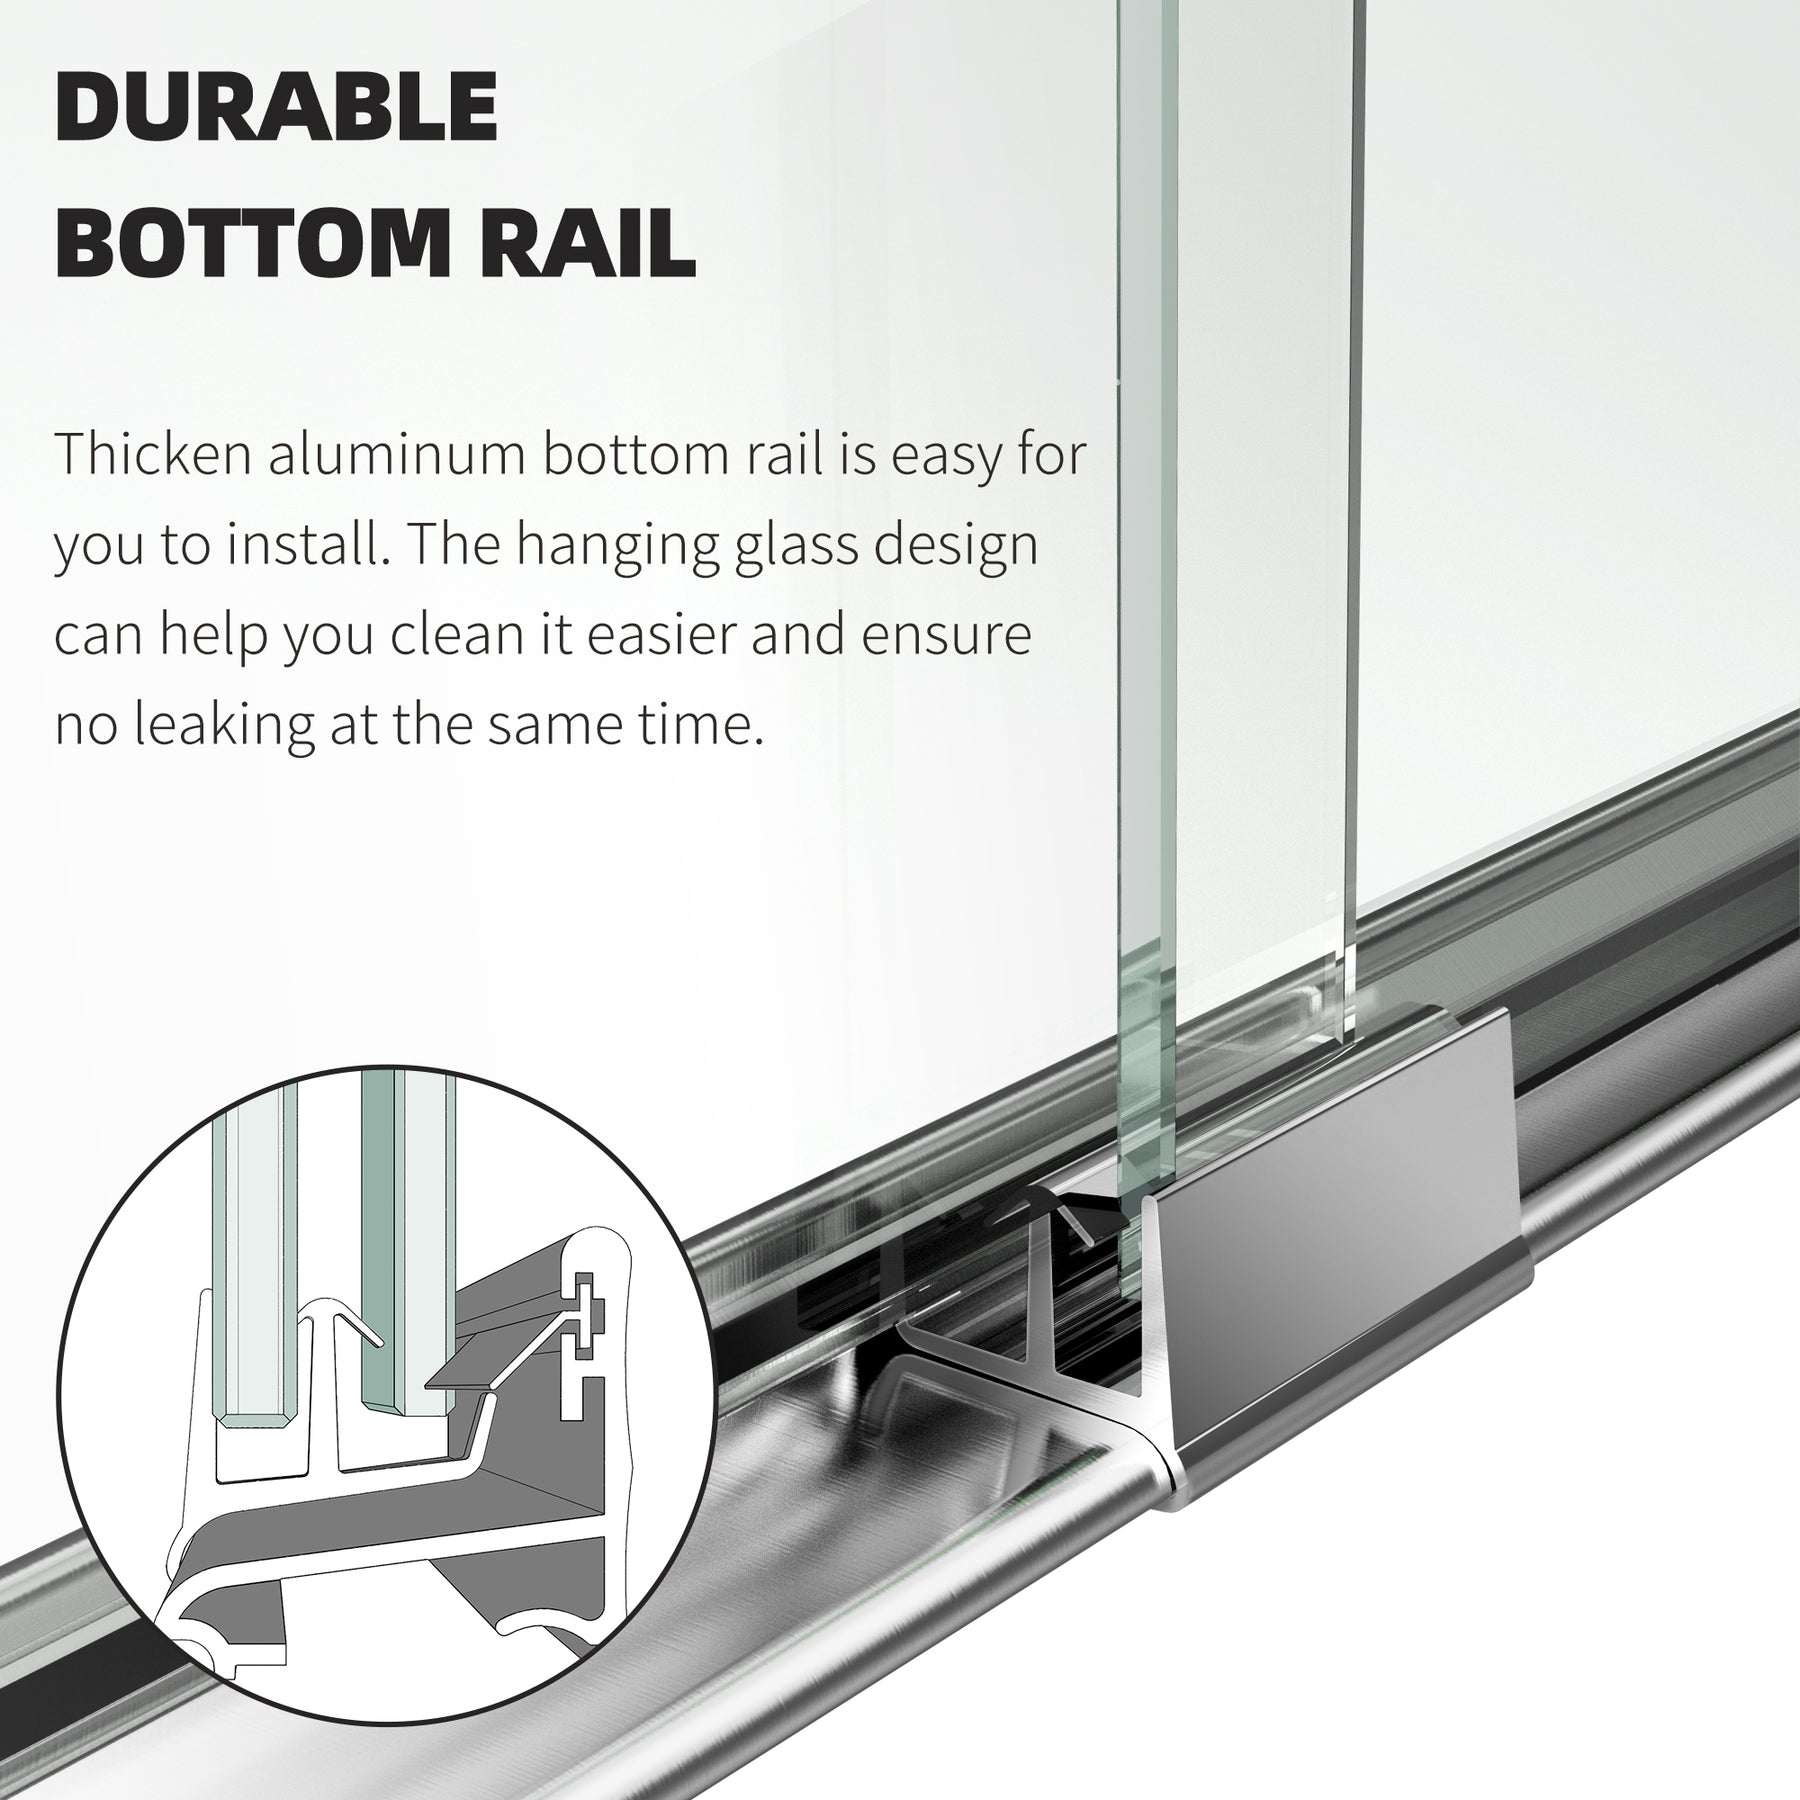 SL4U Framed Sliding Shower Door, Shower 1/4" Clear Glass, Polished Chrome Finish, 48" W x 72" H door.